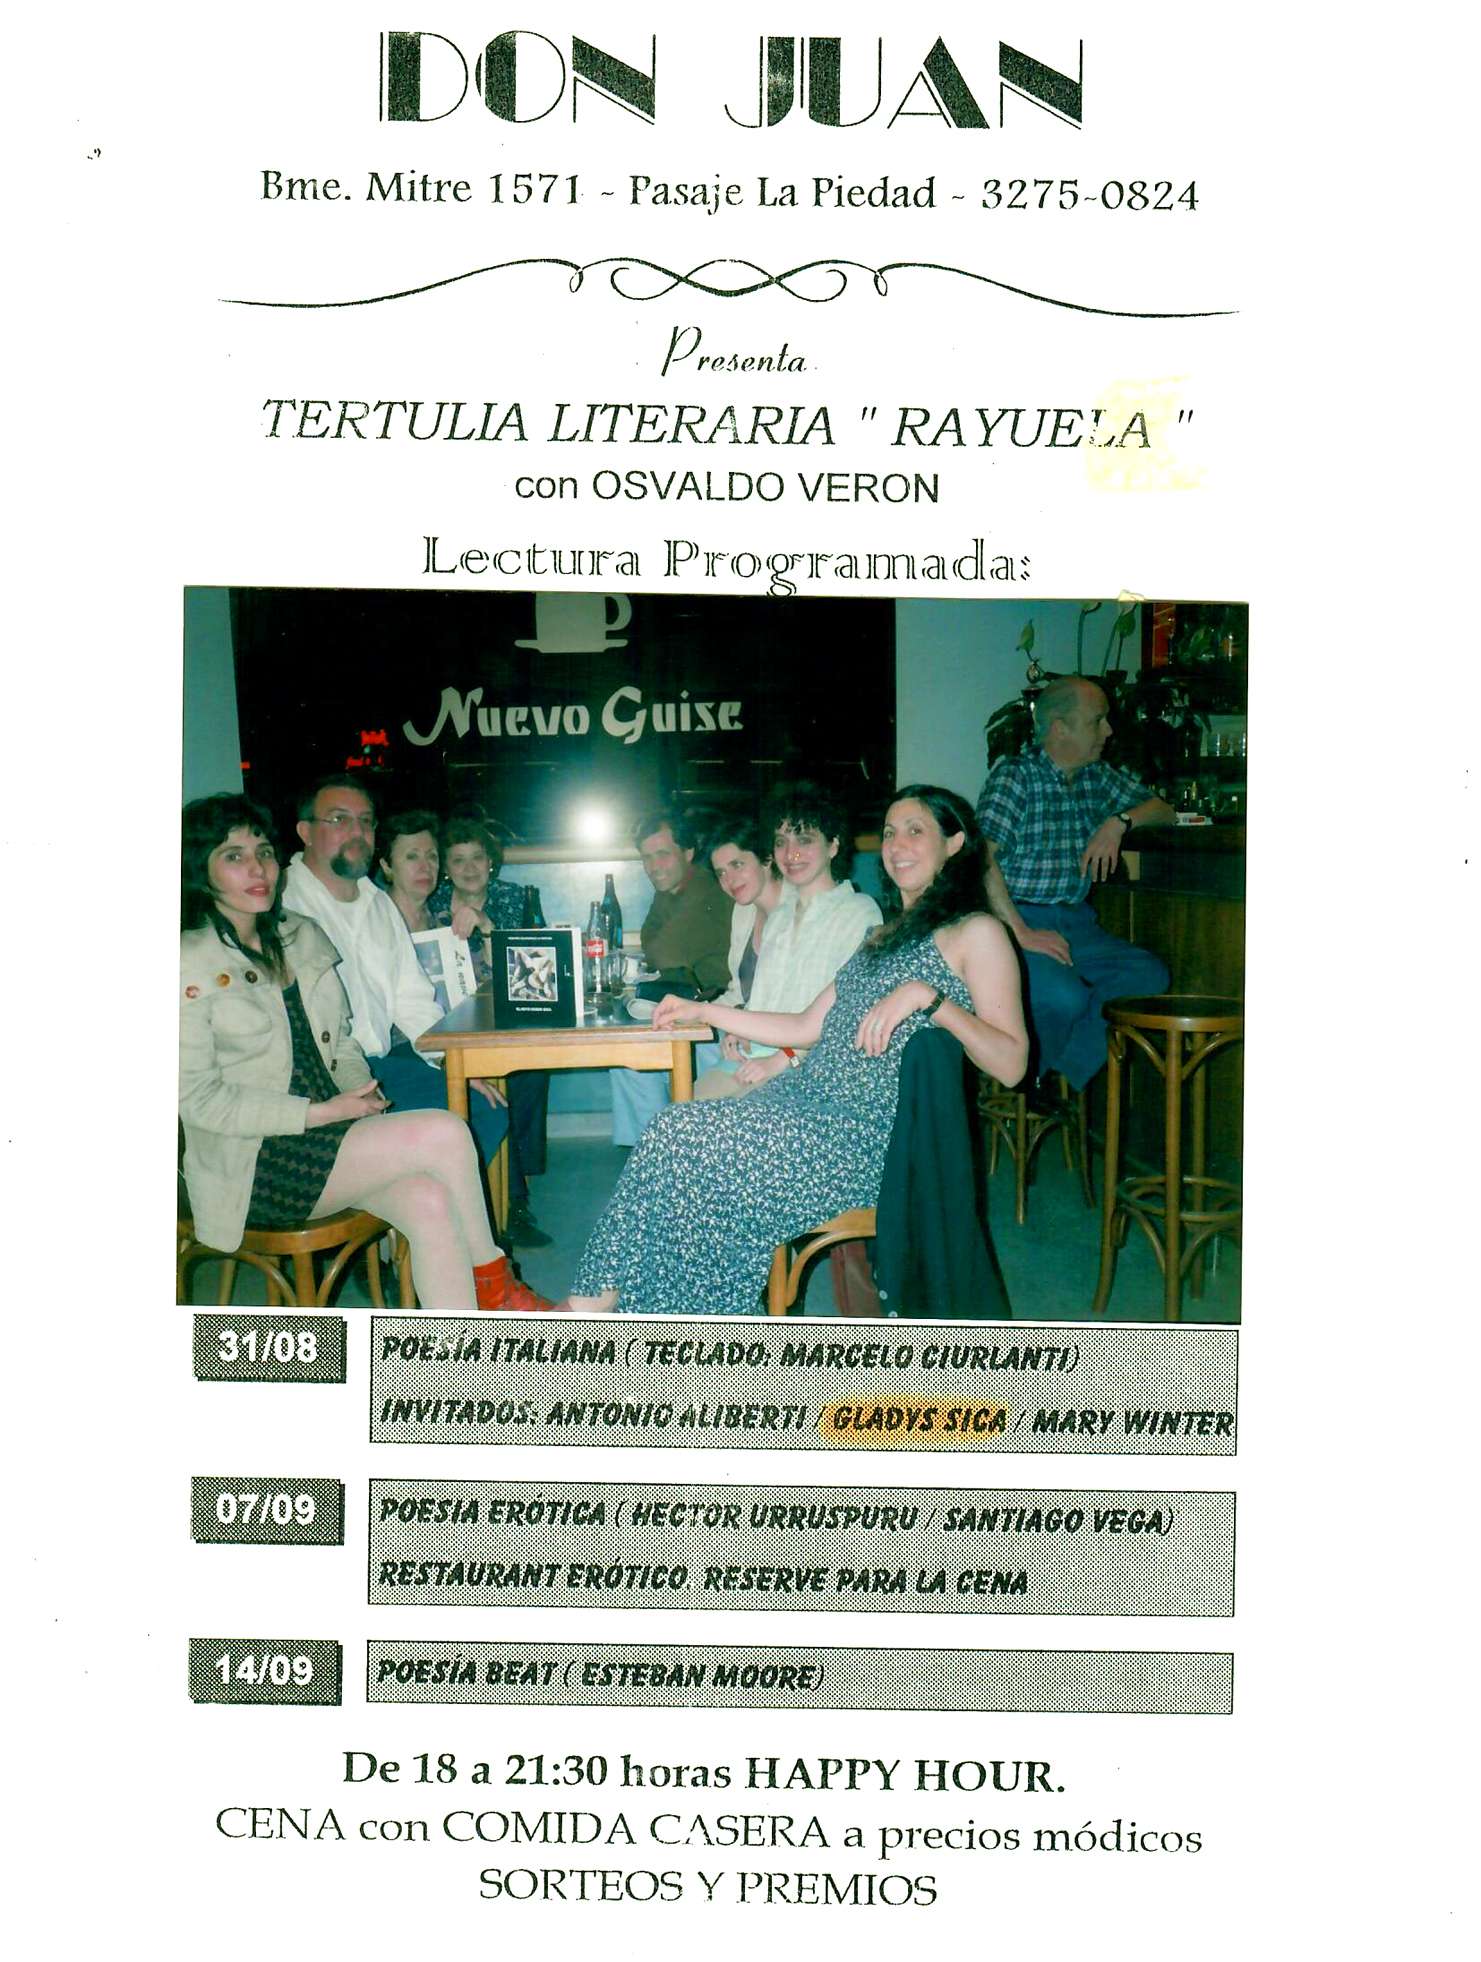 1998 - Salotto Letterario 'Rayuela', Bar 'Don Juan', organizzato da Osvaldo Verón, Buenos Aires.